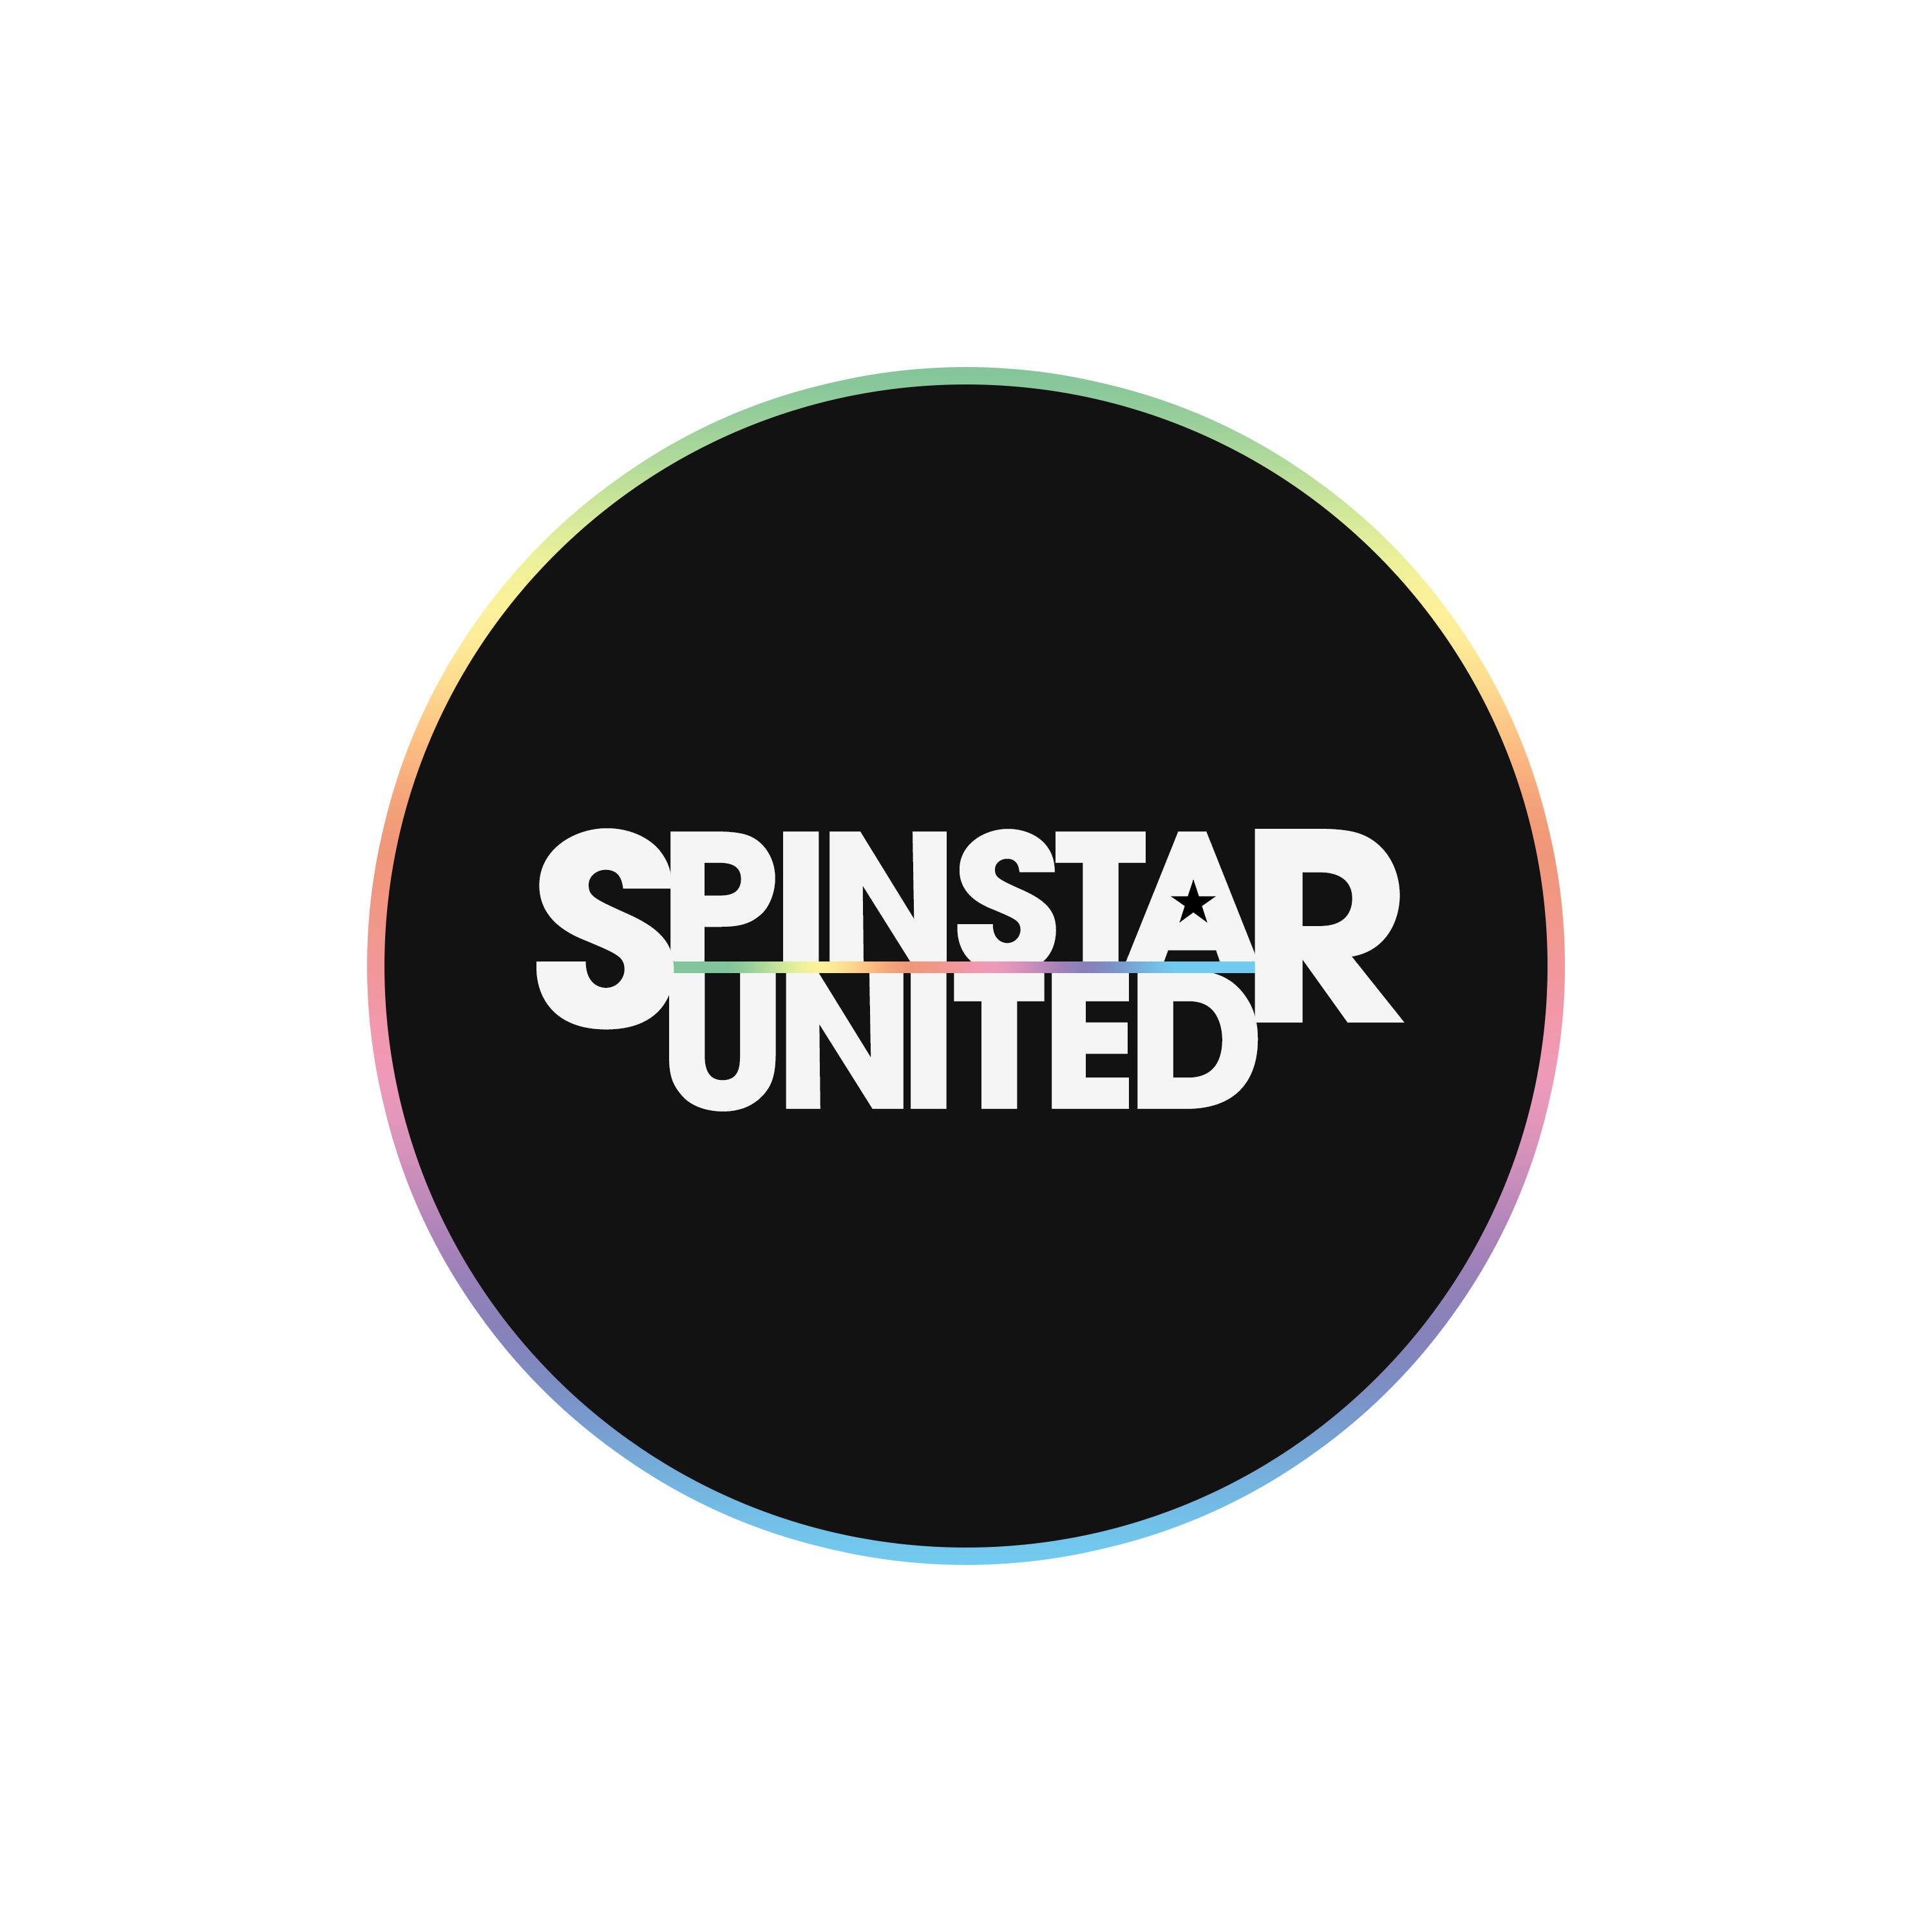 Spinstar United